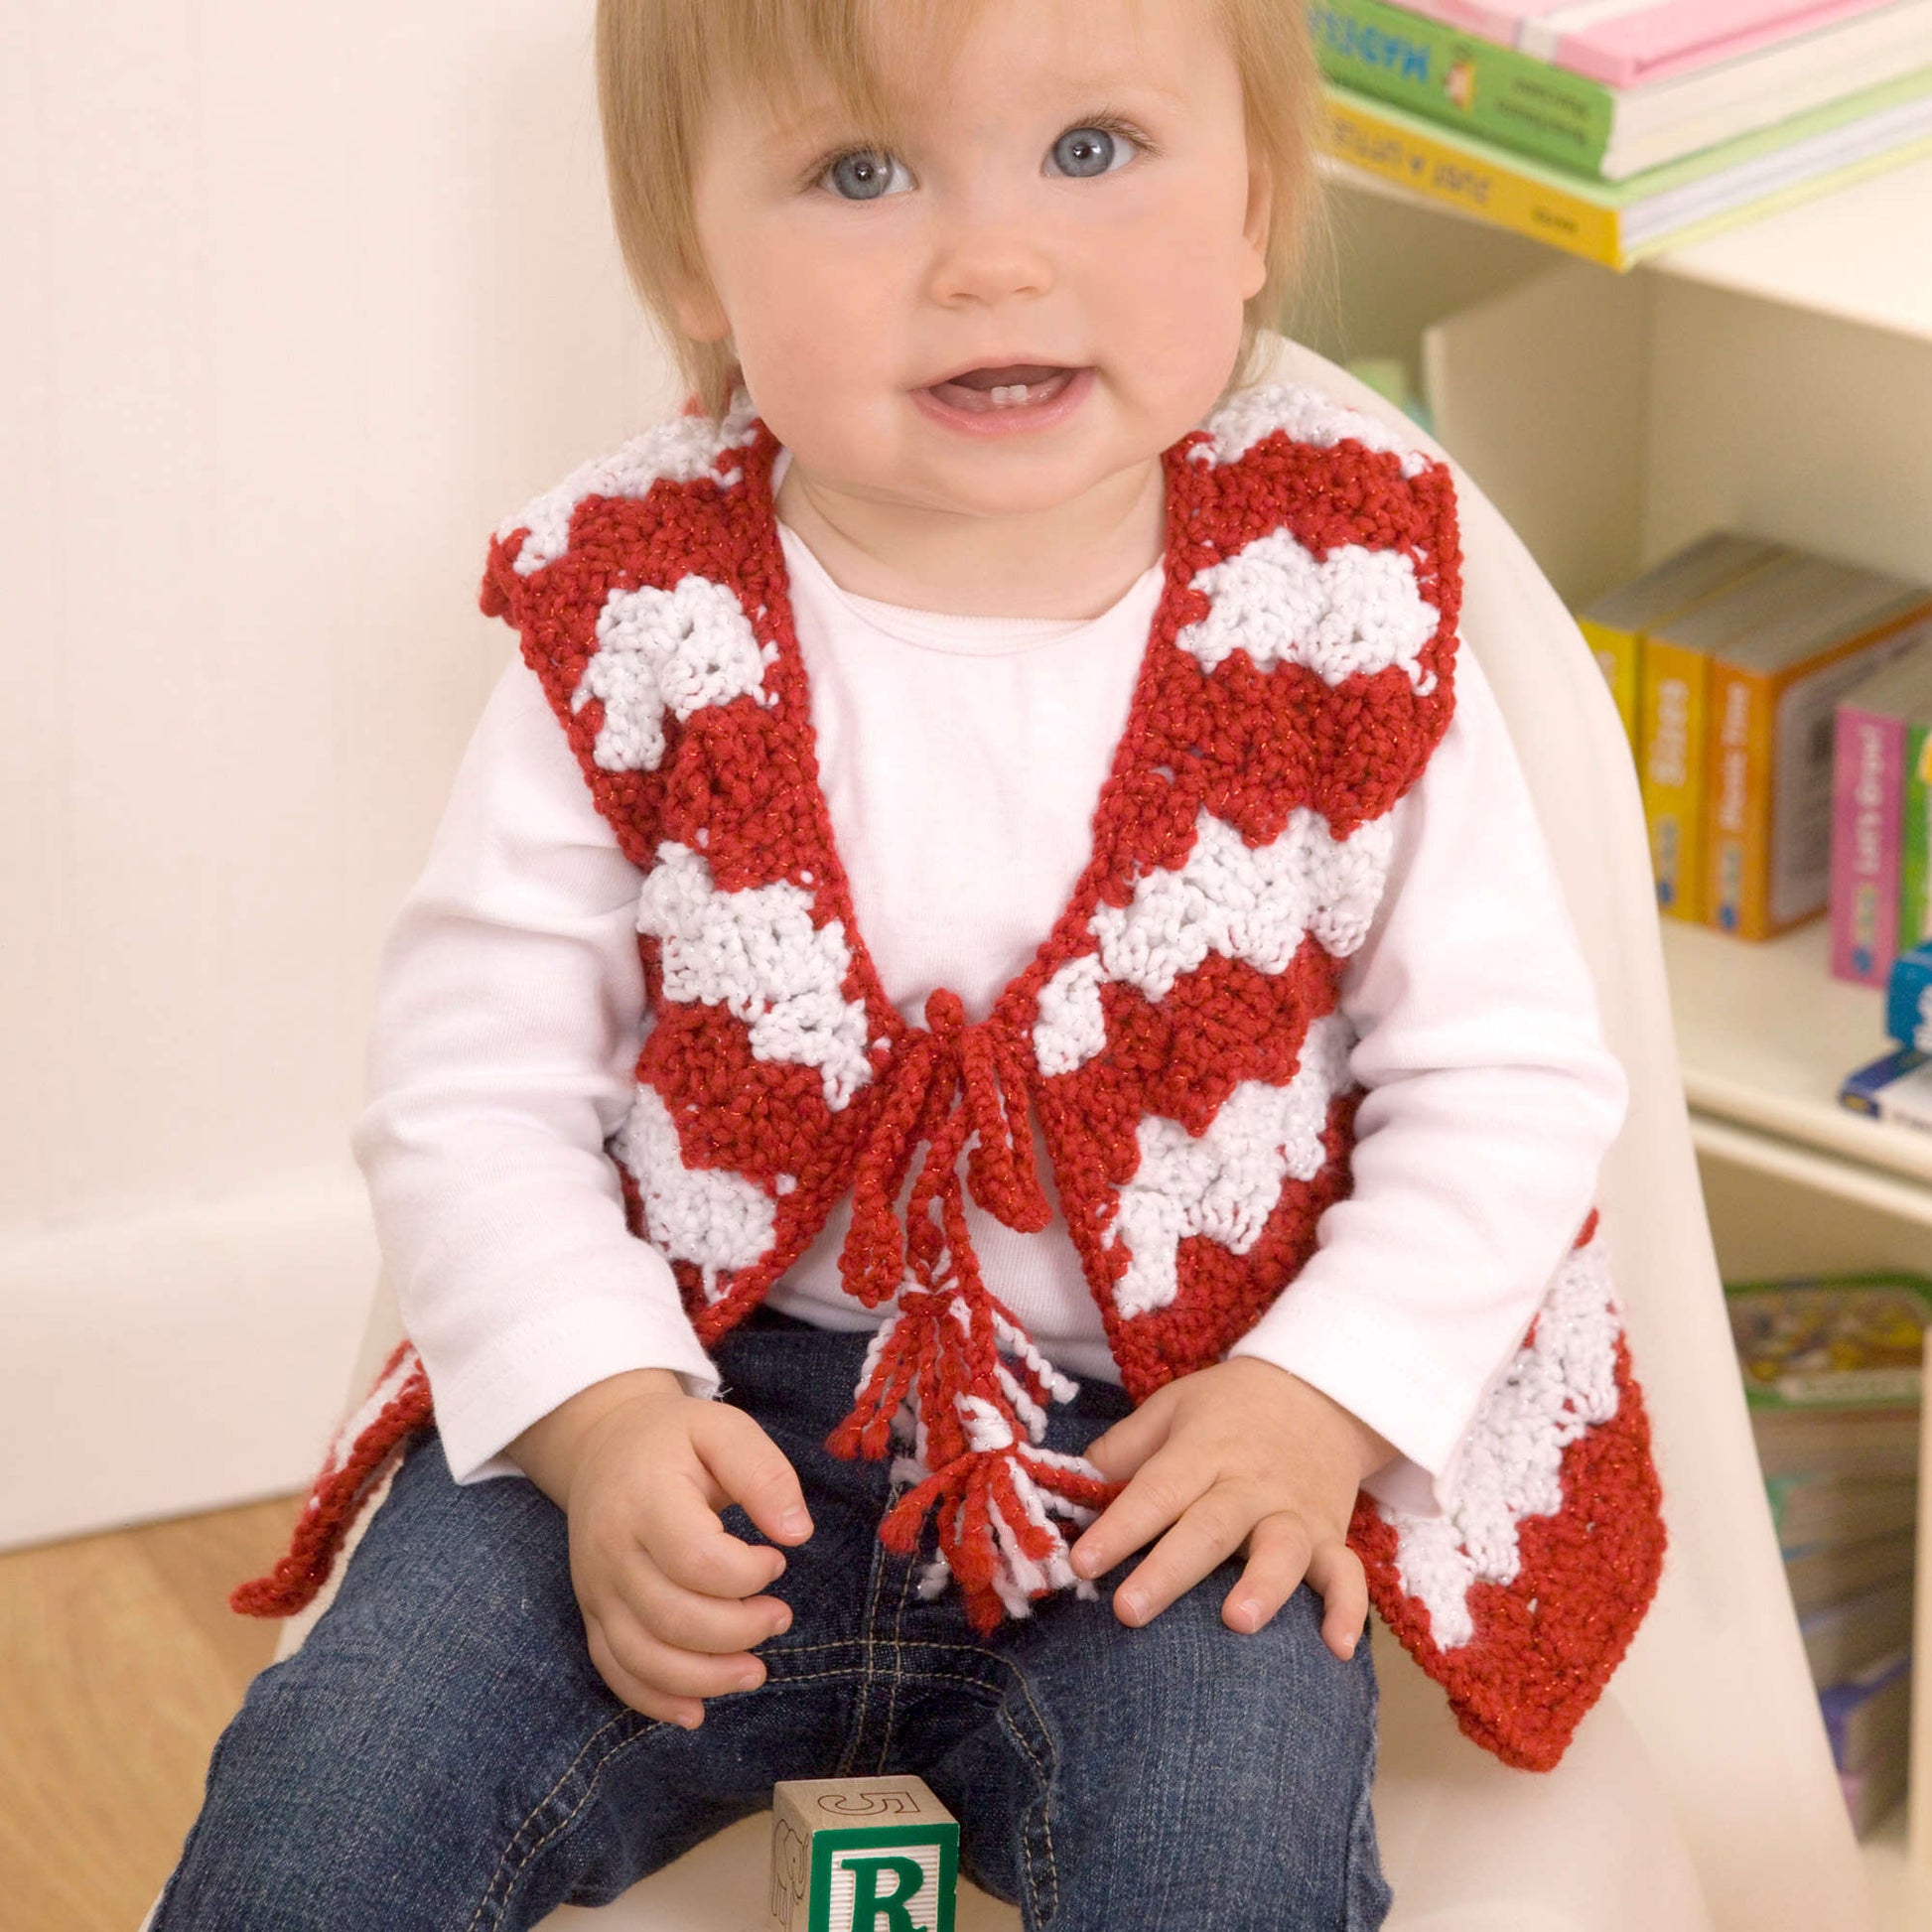 Free Red Heart Crochet Baby Candy Stripe Vest Pattern